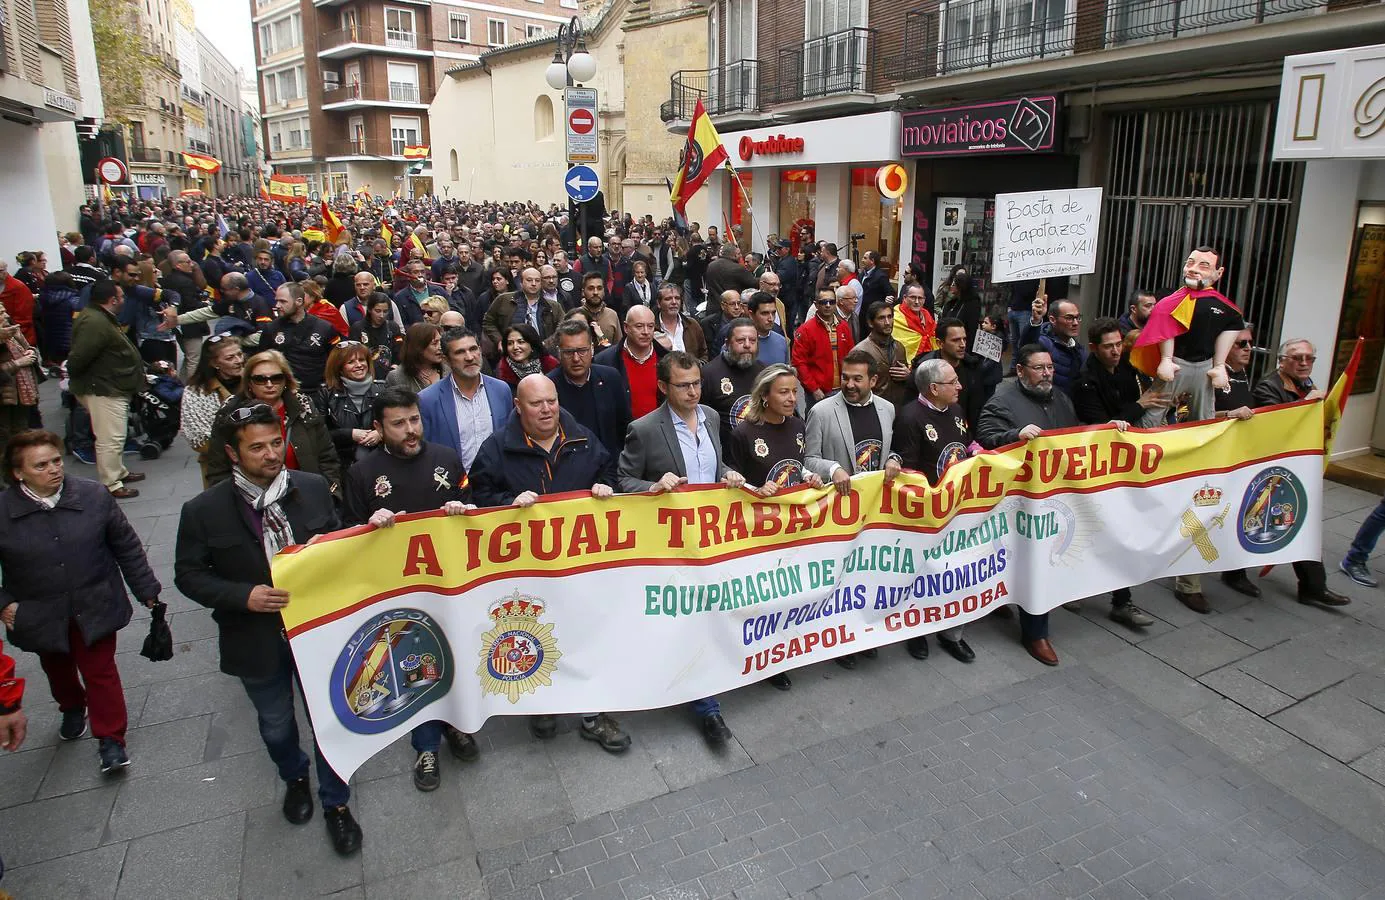 La manifestación de Córdoba por la equiparación salarial de policías y guardias civiles, en imágenes